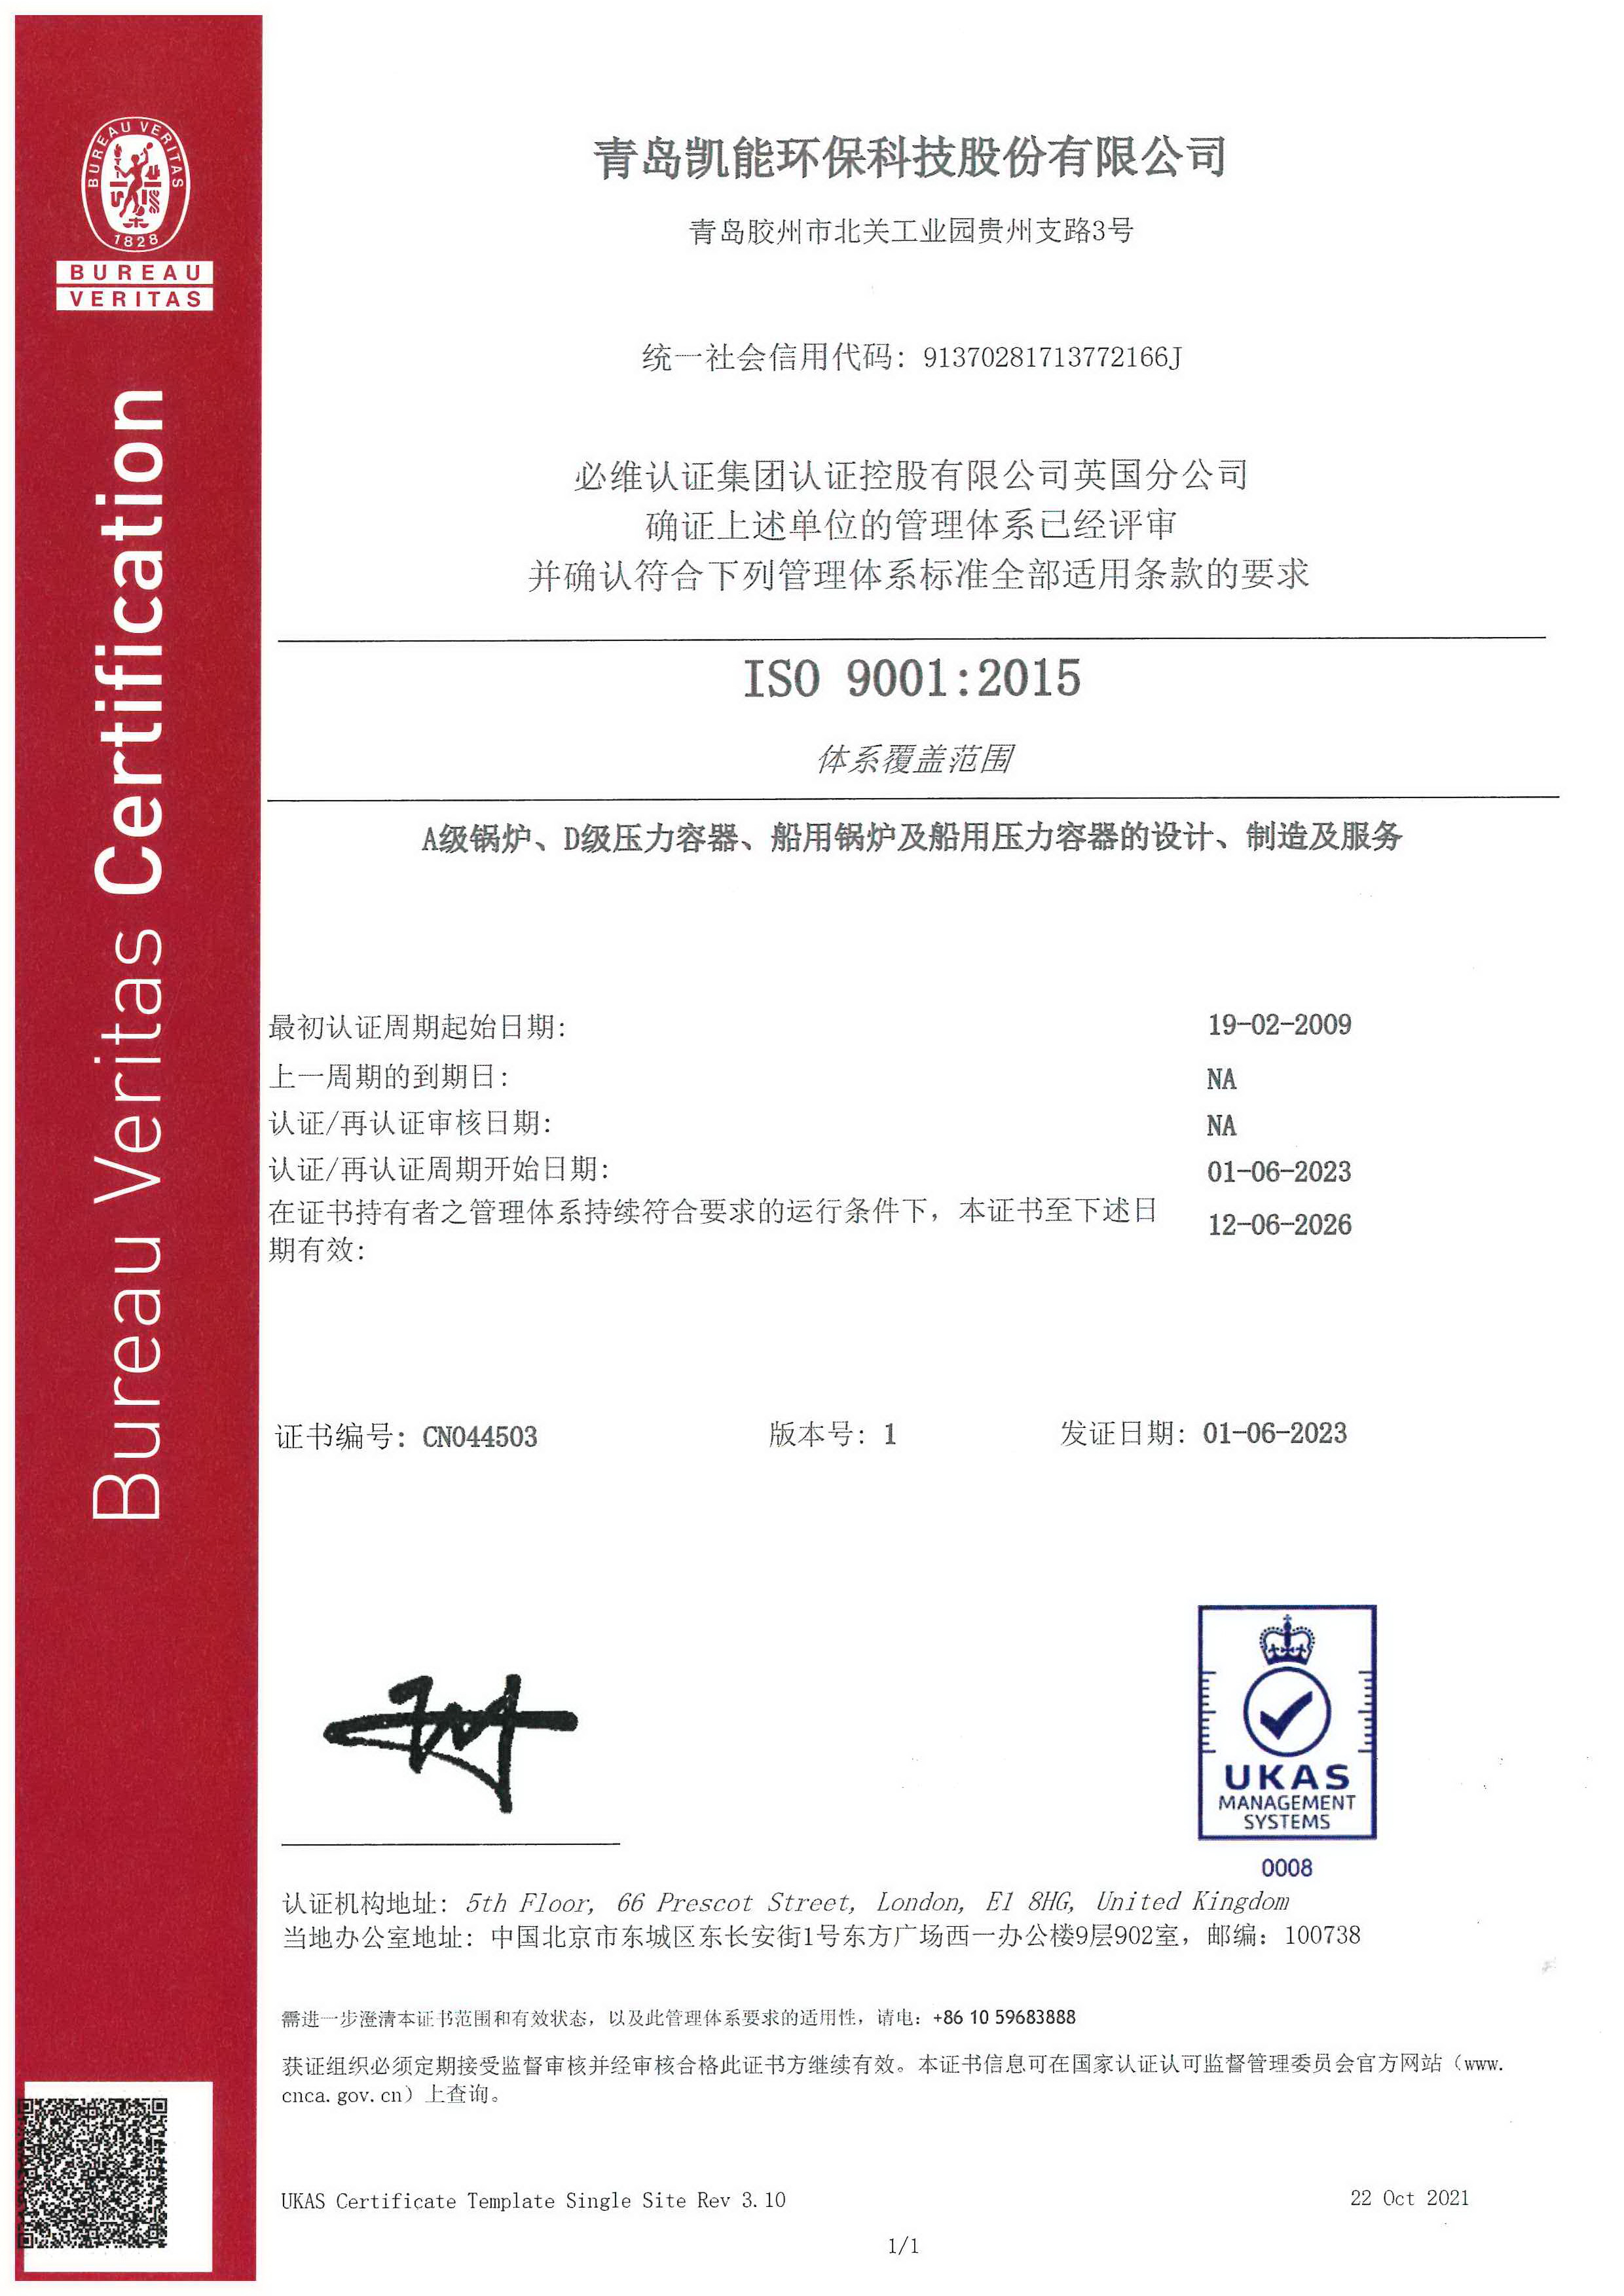 新葡的京集团350vip8888质量管理体系证书